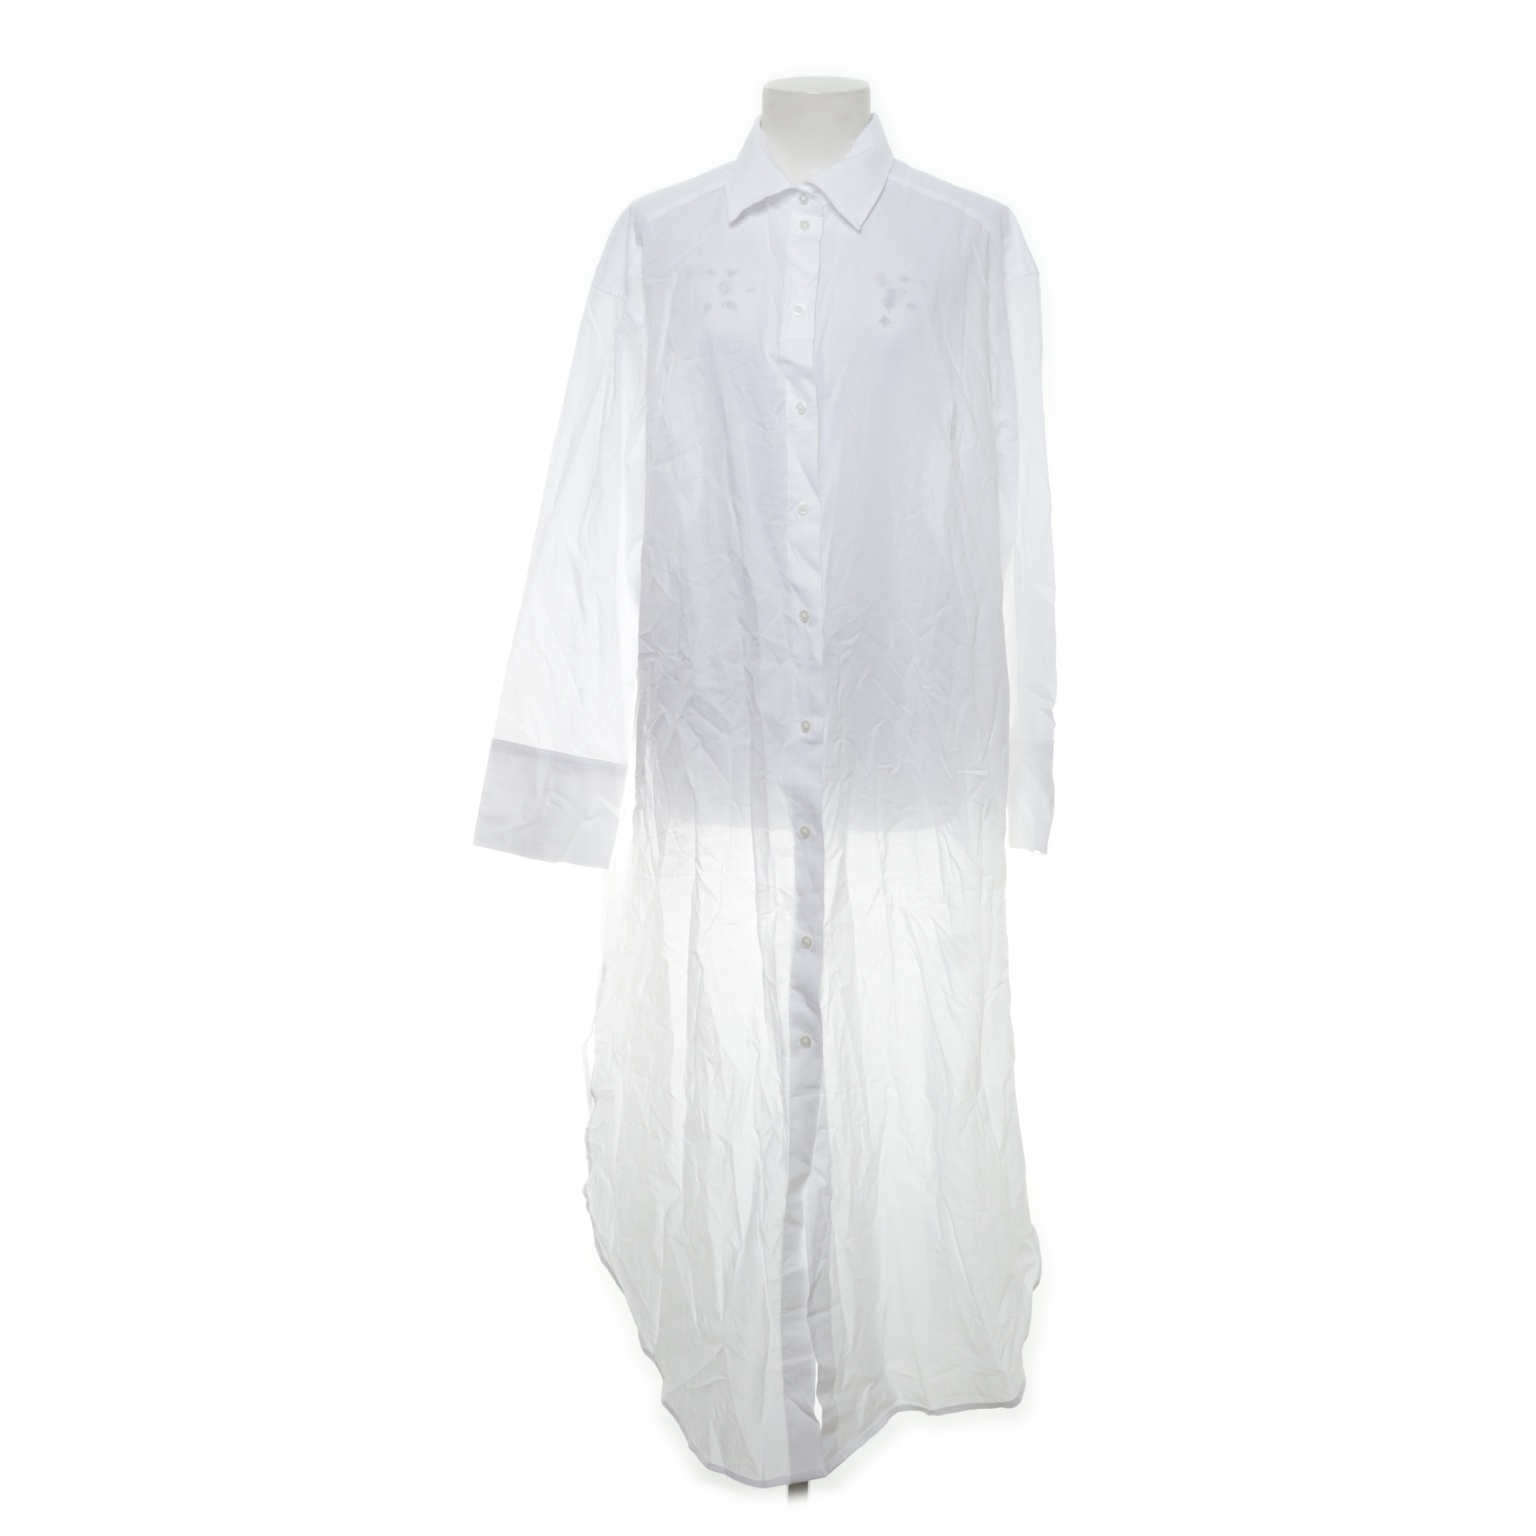 H&M - Blusenkleid - Größe: L - Weiß von H&M